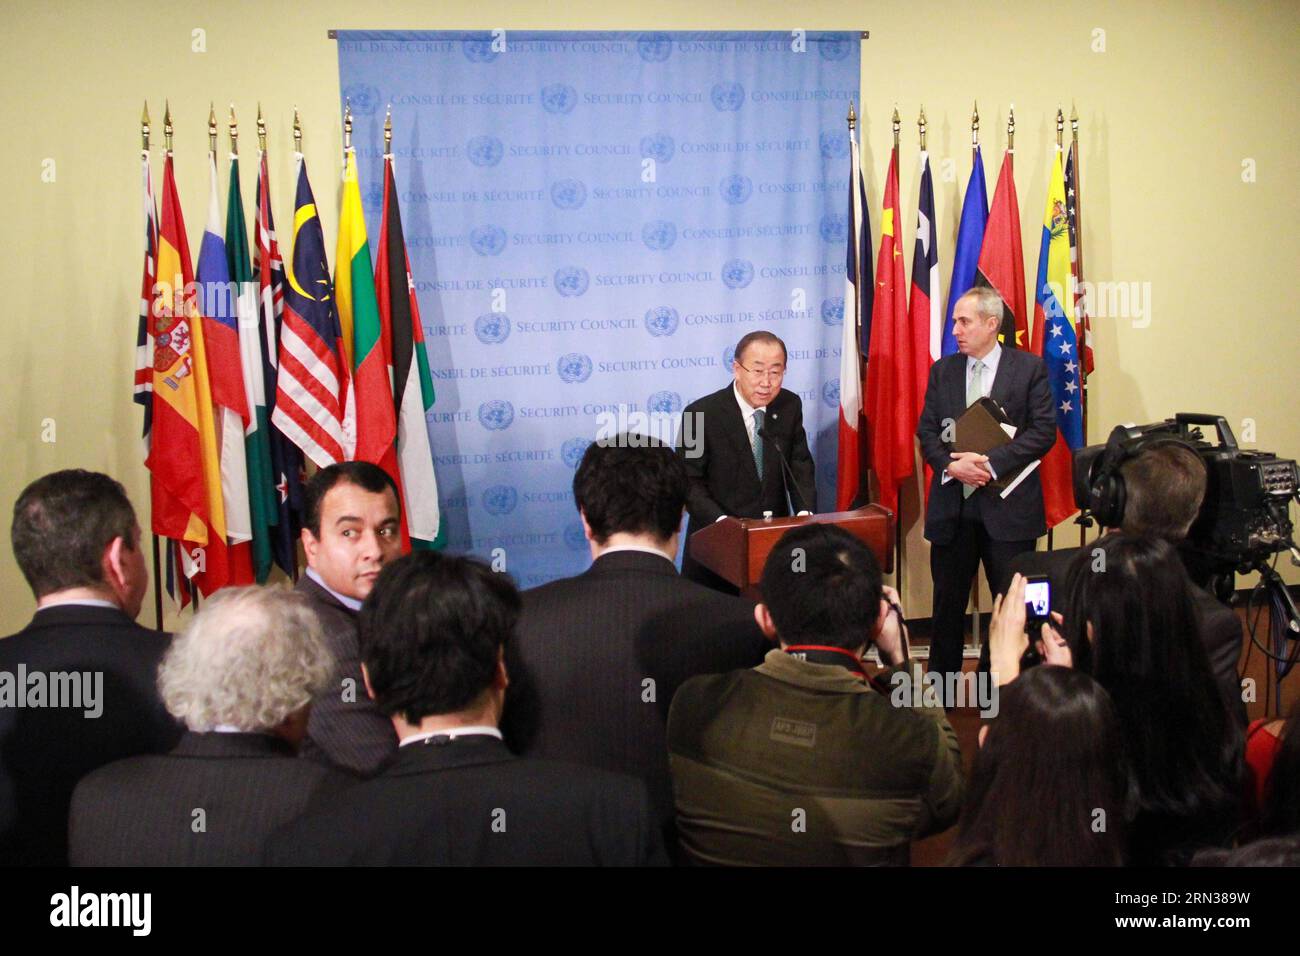 (150409) -- NEW YORK, 9 avril 2015 -- le Secrétaire général des Nations Unies Ban Ki-moon s'adresse aux médias au siège des Nations Unies à New York le 9 avril 2015. Alors que la violence continue de sévir en Syrie et au Yémen, le Secrétaire général des Nations Unies Ban Ki-moon a exhorté jeudi les dirigeants religieux et les éducateurs à prêcher à leurs fidèles le sens correct de la tolérance ; le sens correct de la culture et de la tradition, dans le respect mutuel. Un-NEW YORK-YEMEN-SYRIA-BAN KI-MOON NiuxXiaolei PUBLICATIONxNOTxINxCHN New York avril 9 2015 le Secrétaire général de l'ONU Ban KI Moon s'adresse aux médias AU siège de l'ONU à New York SUR Apri Banque D'Images